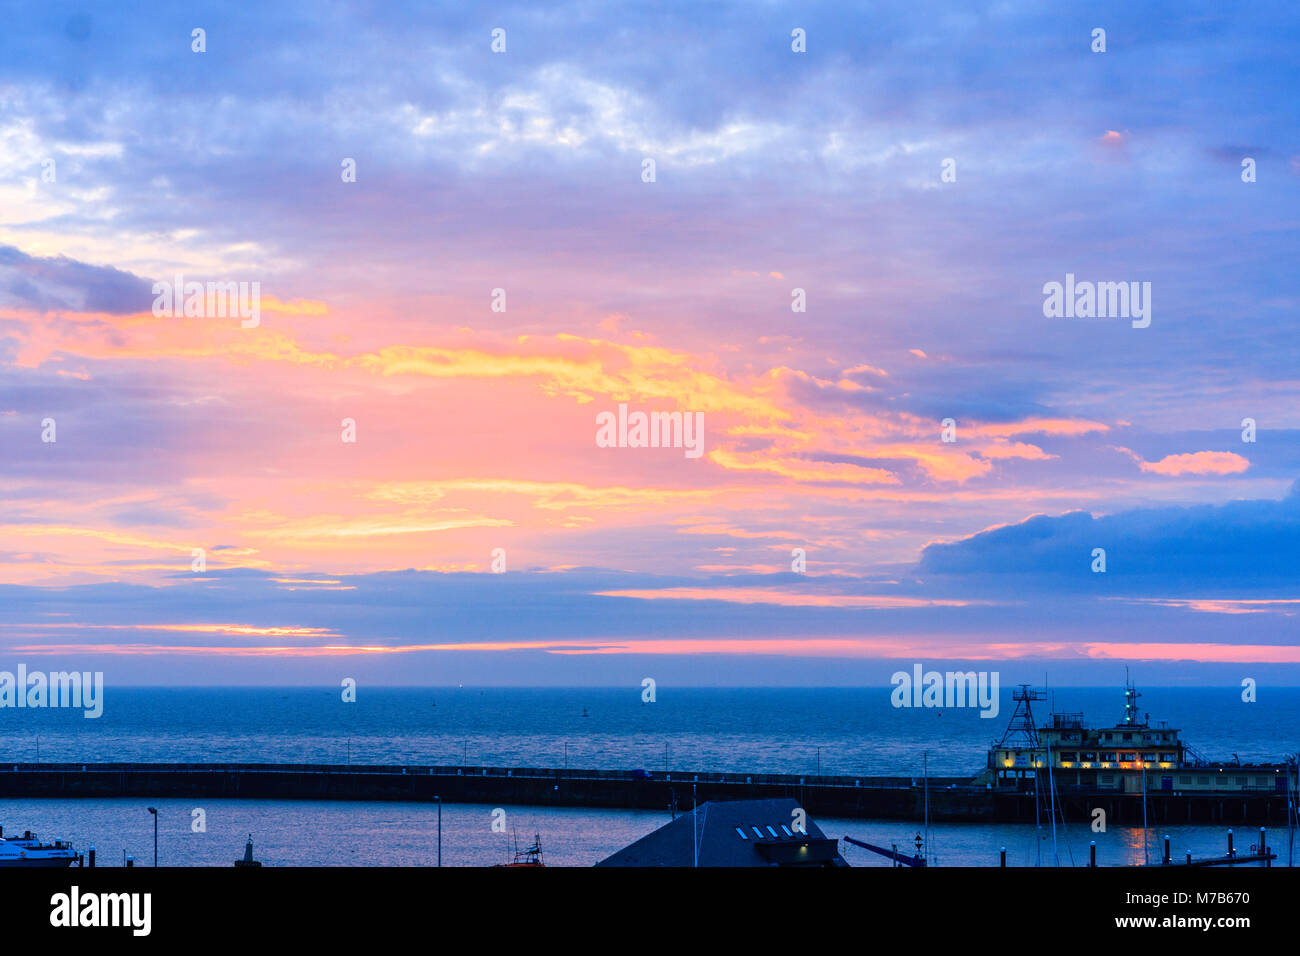 Inghilterra, Ramsgate porto. Alba sul canale Inglese. Nuvole e cielo blu con evidenza di colore brillante durante l'alba e tramonto, sun non effettivamente visto, dietro il cloud. Foto Stock